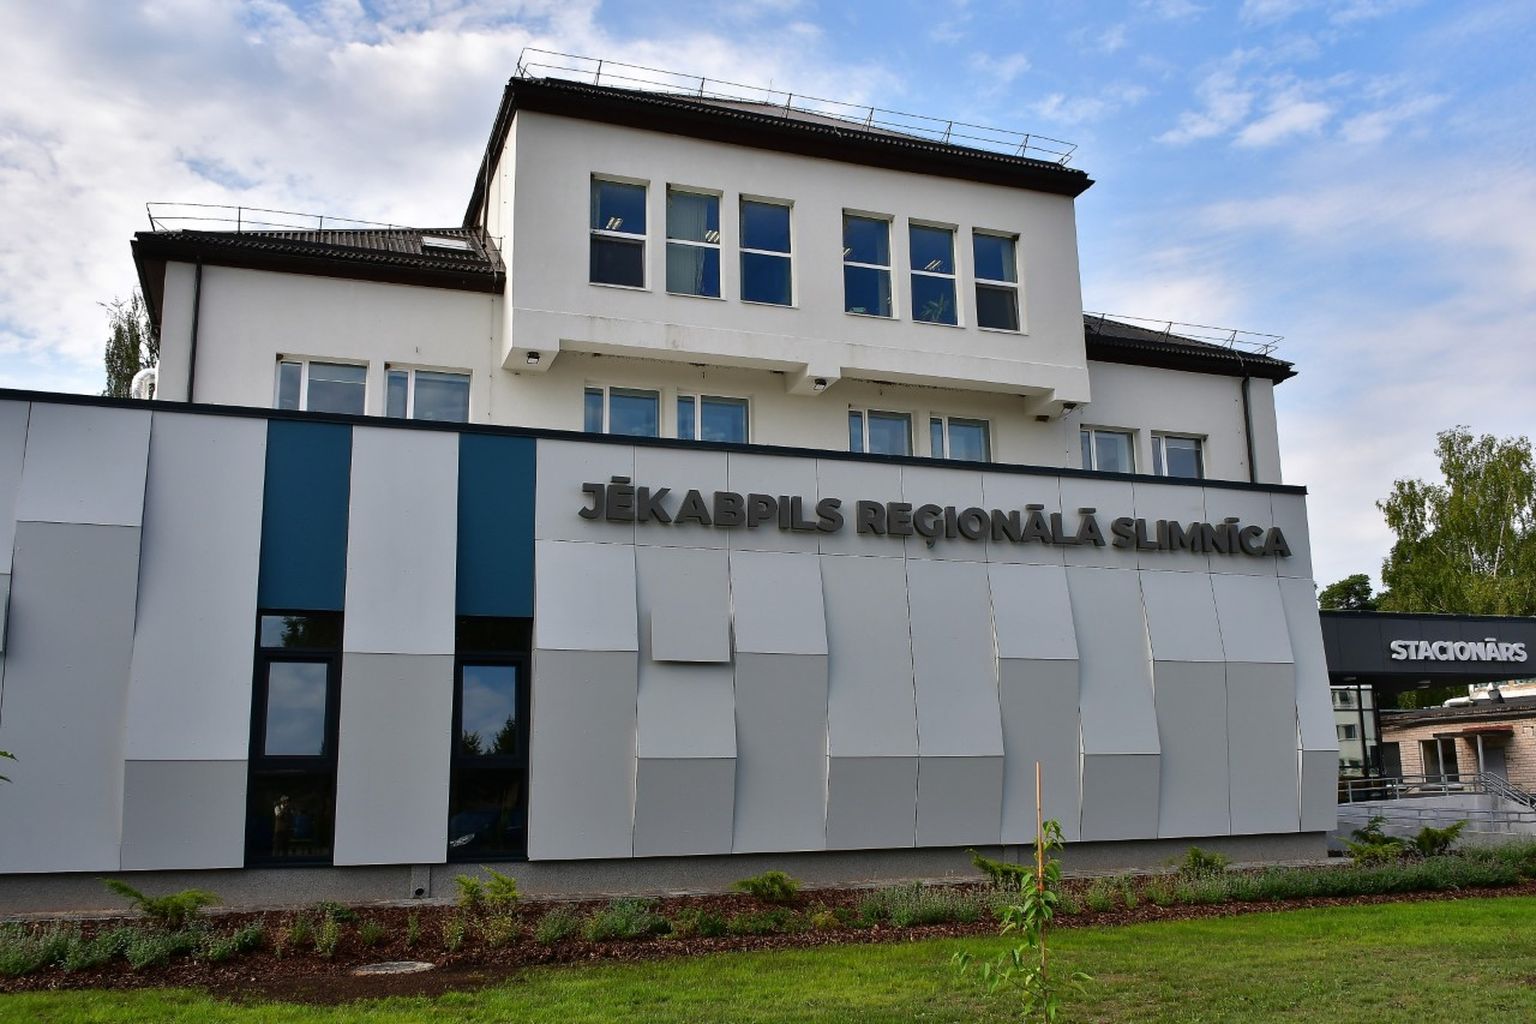 SIA "Jēkabpils reģionālā slimnīca"